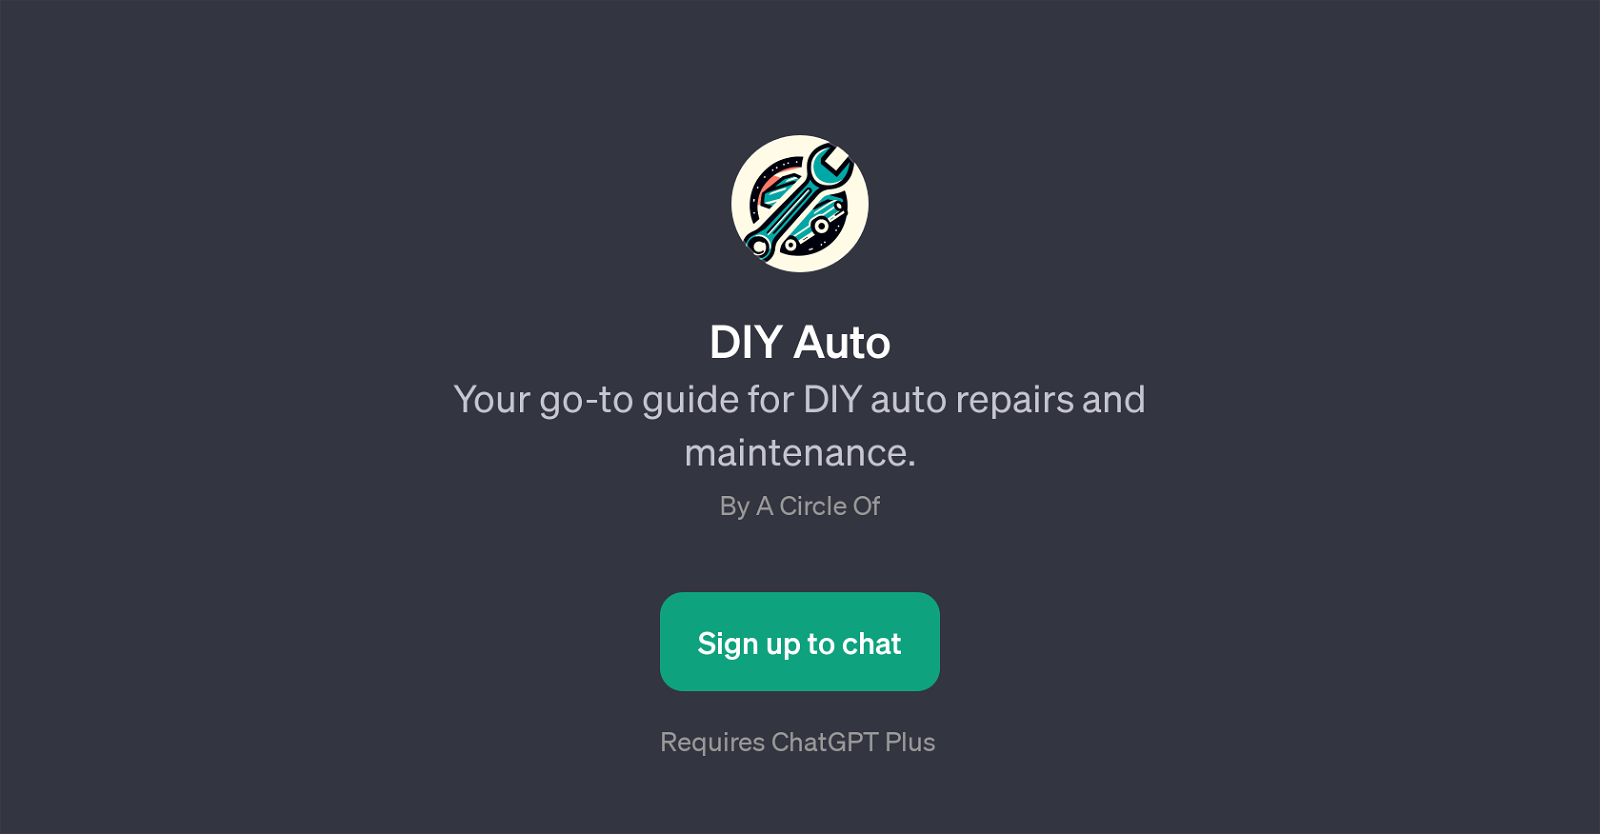 DIY Auto website